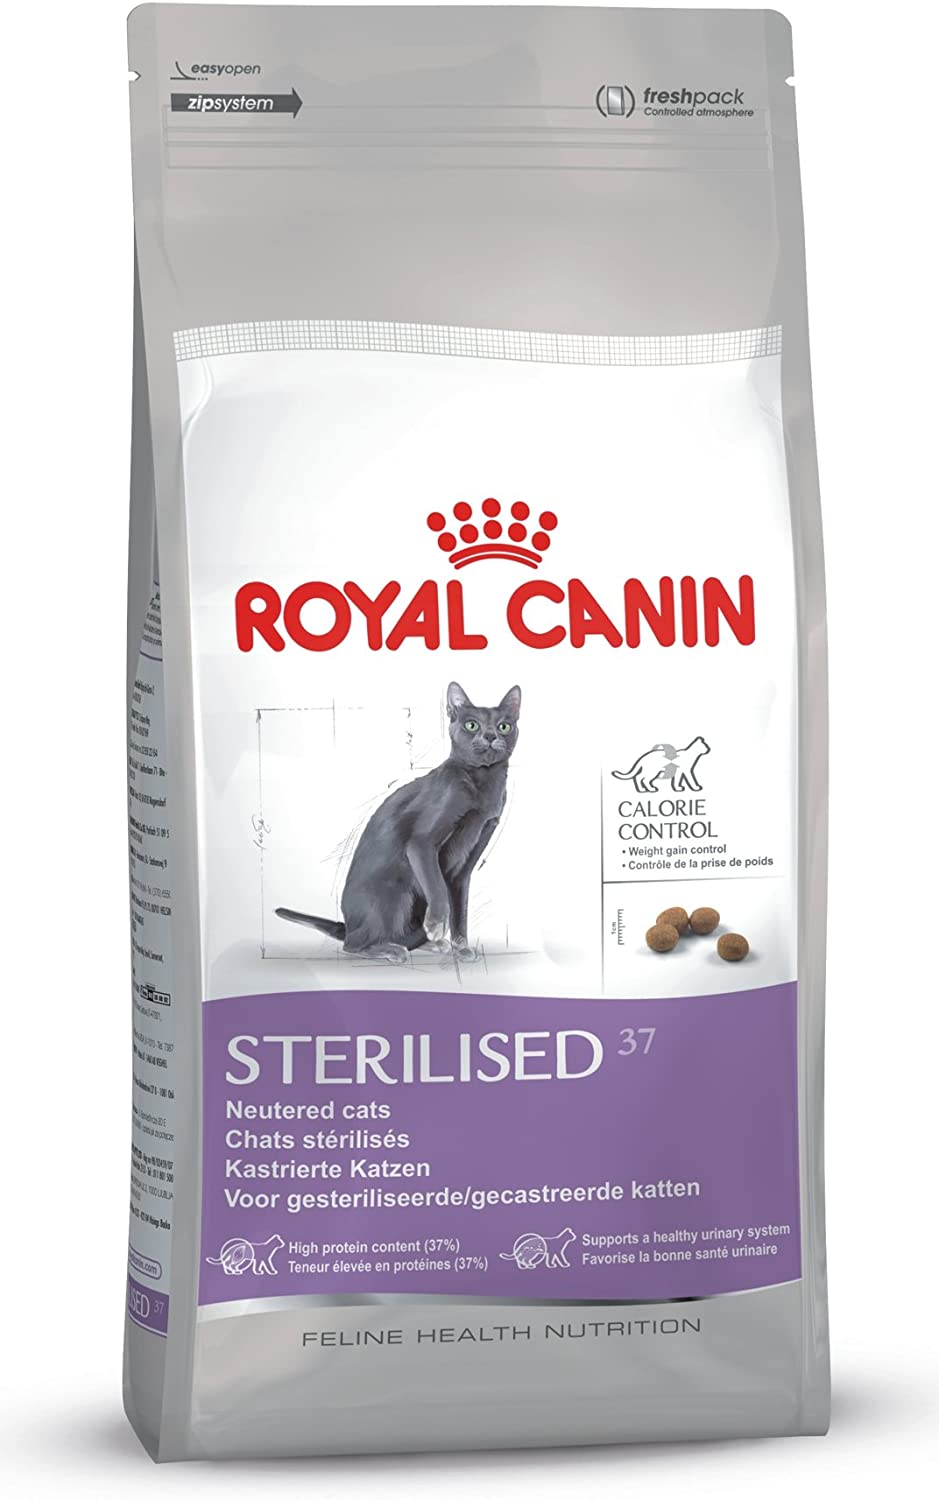  Royal Canin 55128 esterilizado 10 kg - comida para gatos 